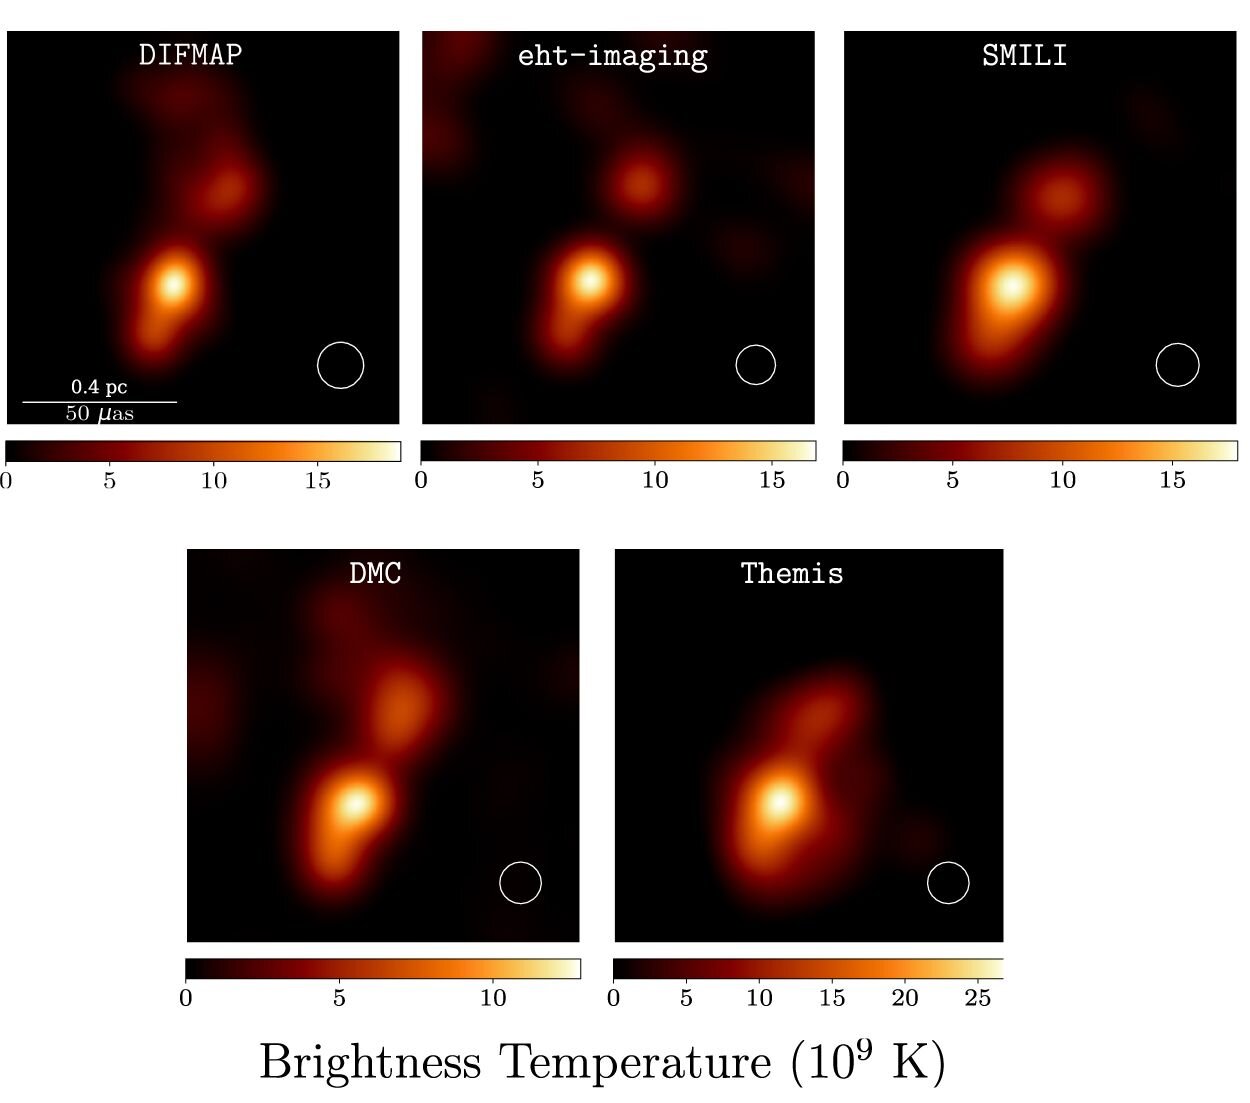 De Event Horizon Telescope heeft beelden gemaakt van de NRAO 530 quasar